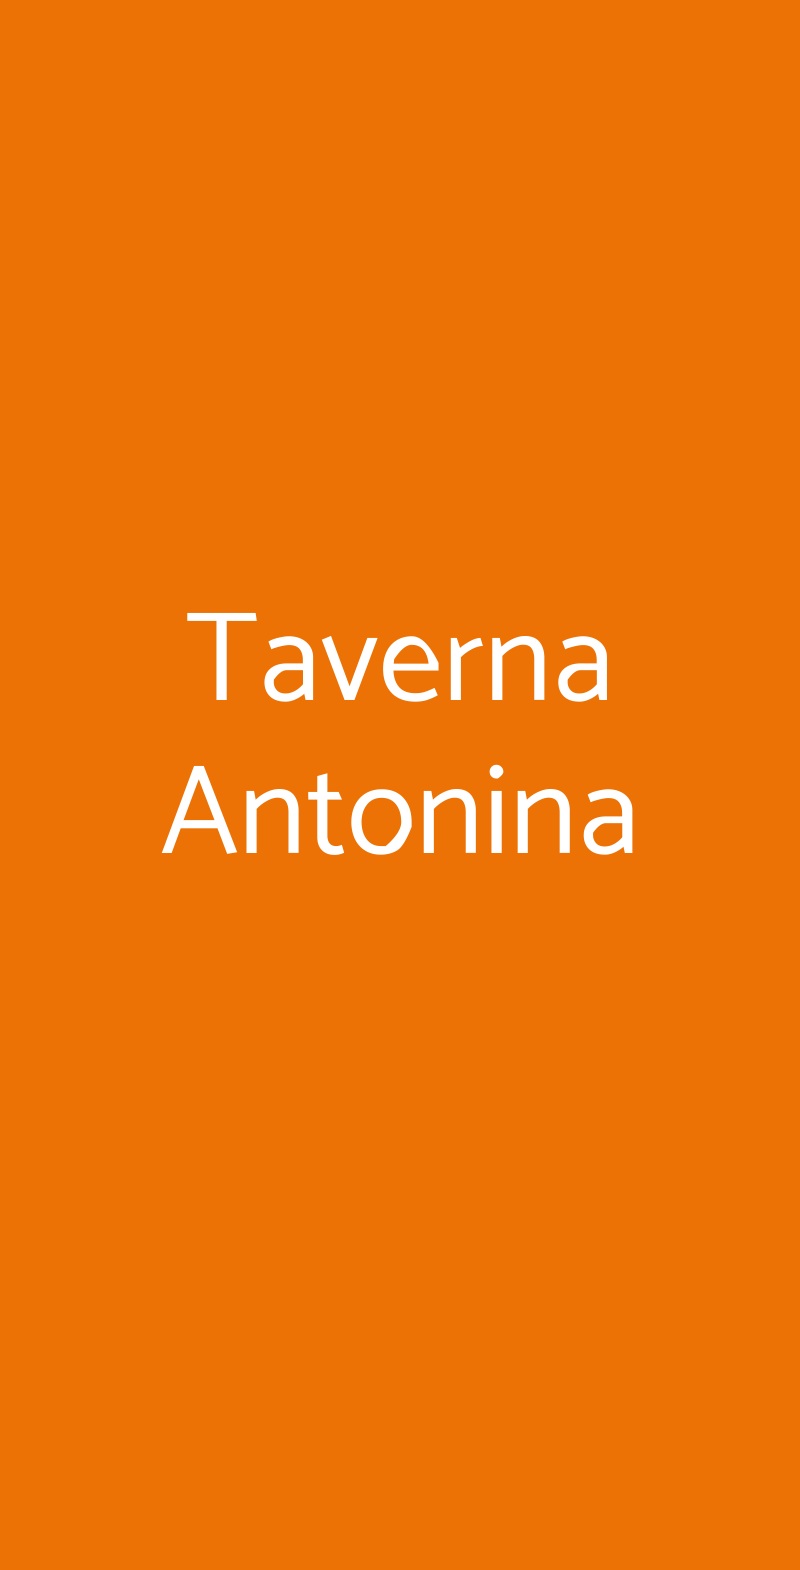 Taverna Antonina Roma menù 1 pagina